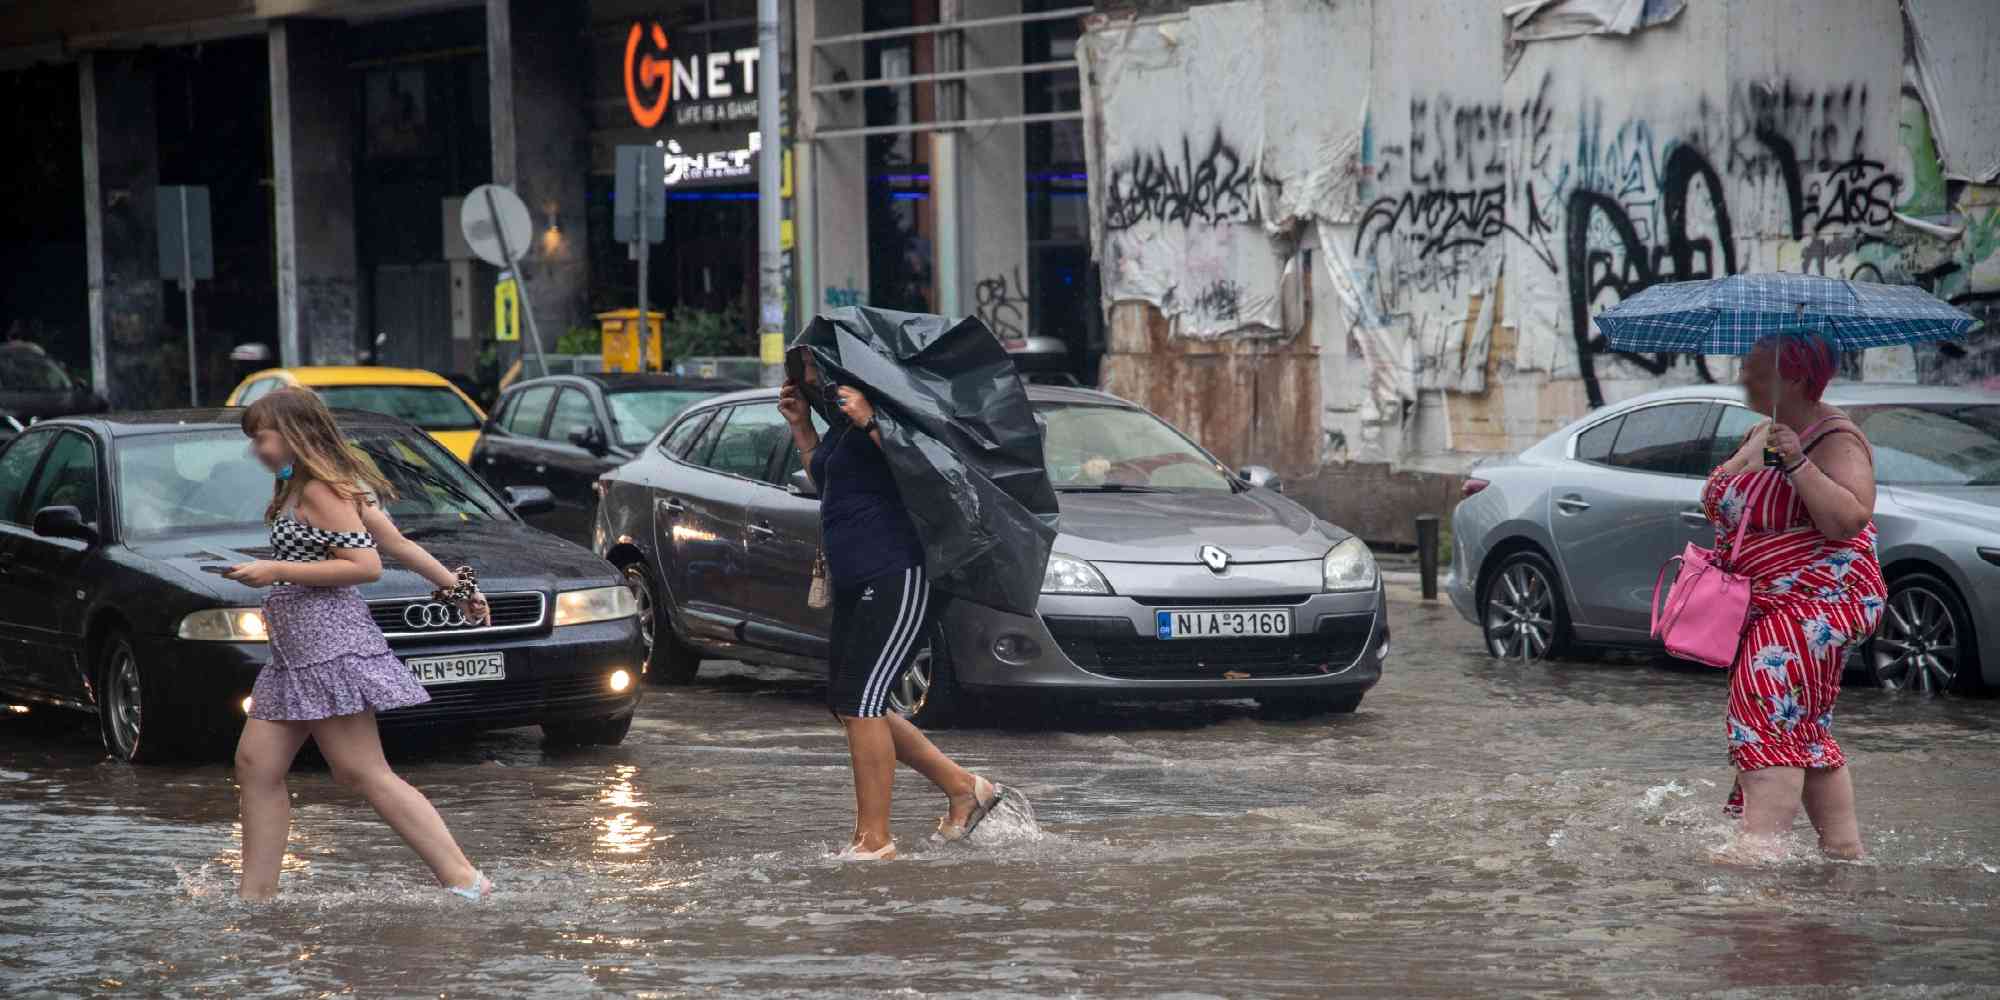 Άνθρωποι περπατούν σε πλημμυρισμένους δρόμους στην Θεσσαλονίκη μετά από καταιγίδα